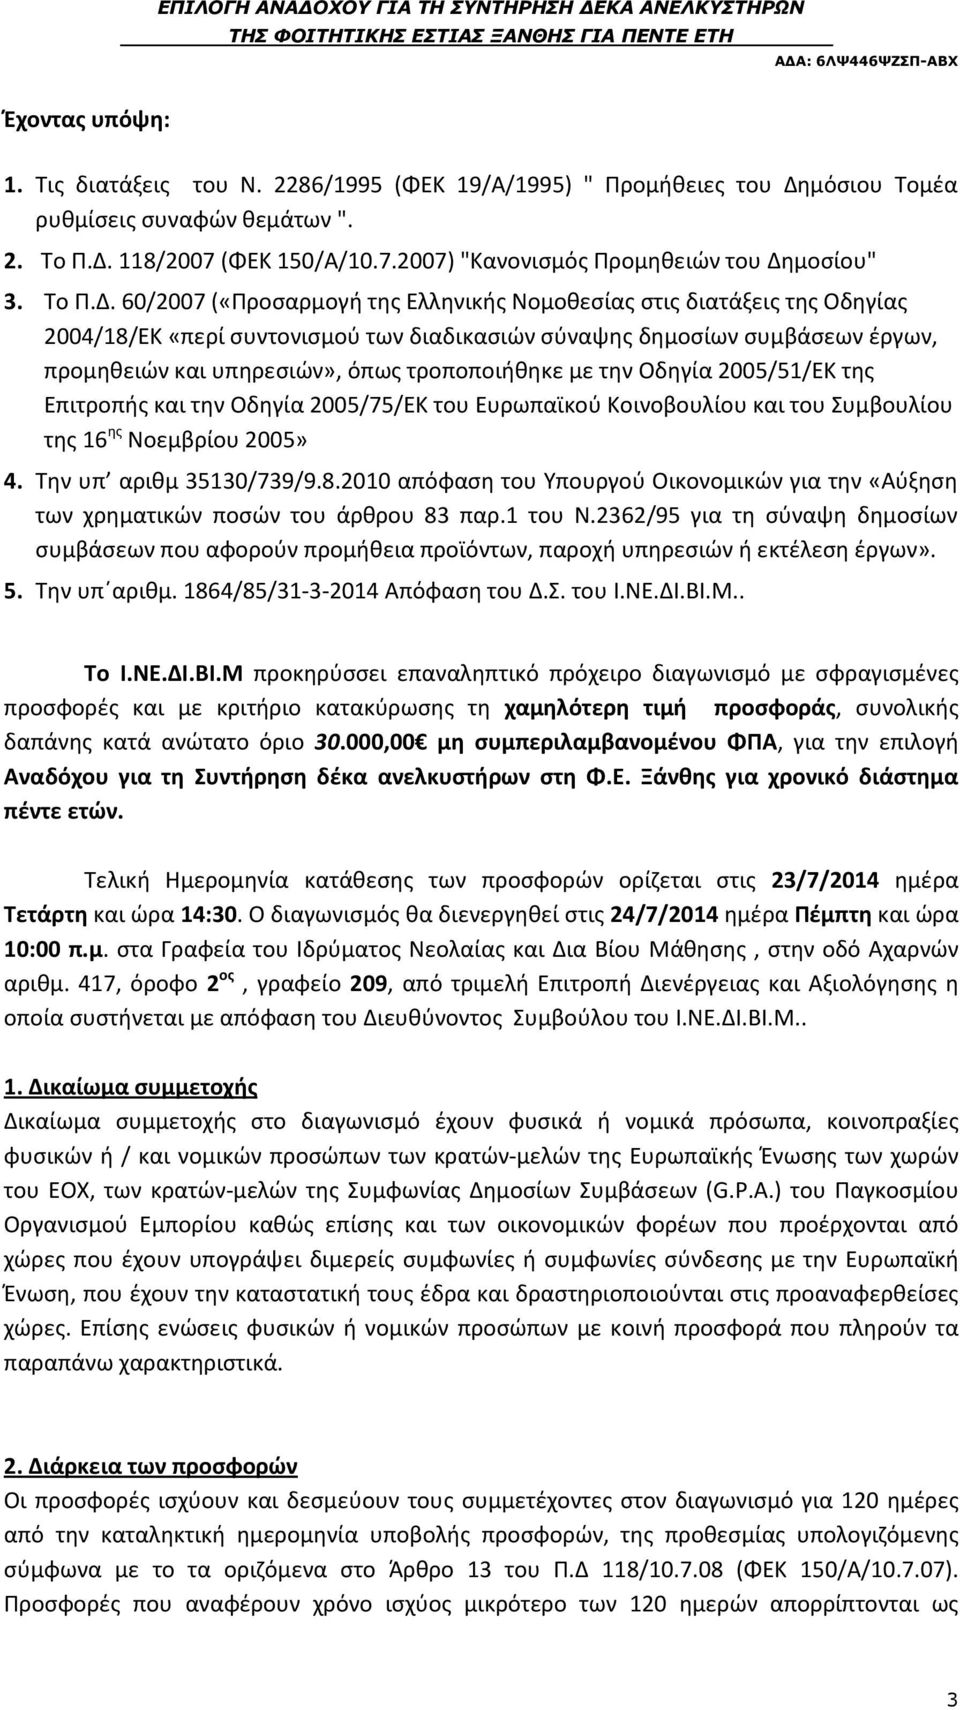 60/2007 («Προσαρμογή της Ελληνικής Νομοθεσίας στις διατάξεις της Οδηγίας 2004/18/ΕΚ «περί συντονισμού των διαδικασιών σύναψης δημοσίων συμβάσεων έργων, προμηθειών και υπηρεσιών», όπως τροποποιήθηκε